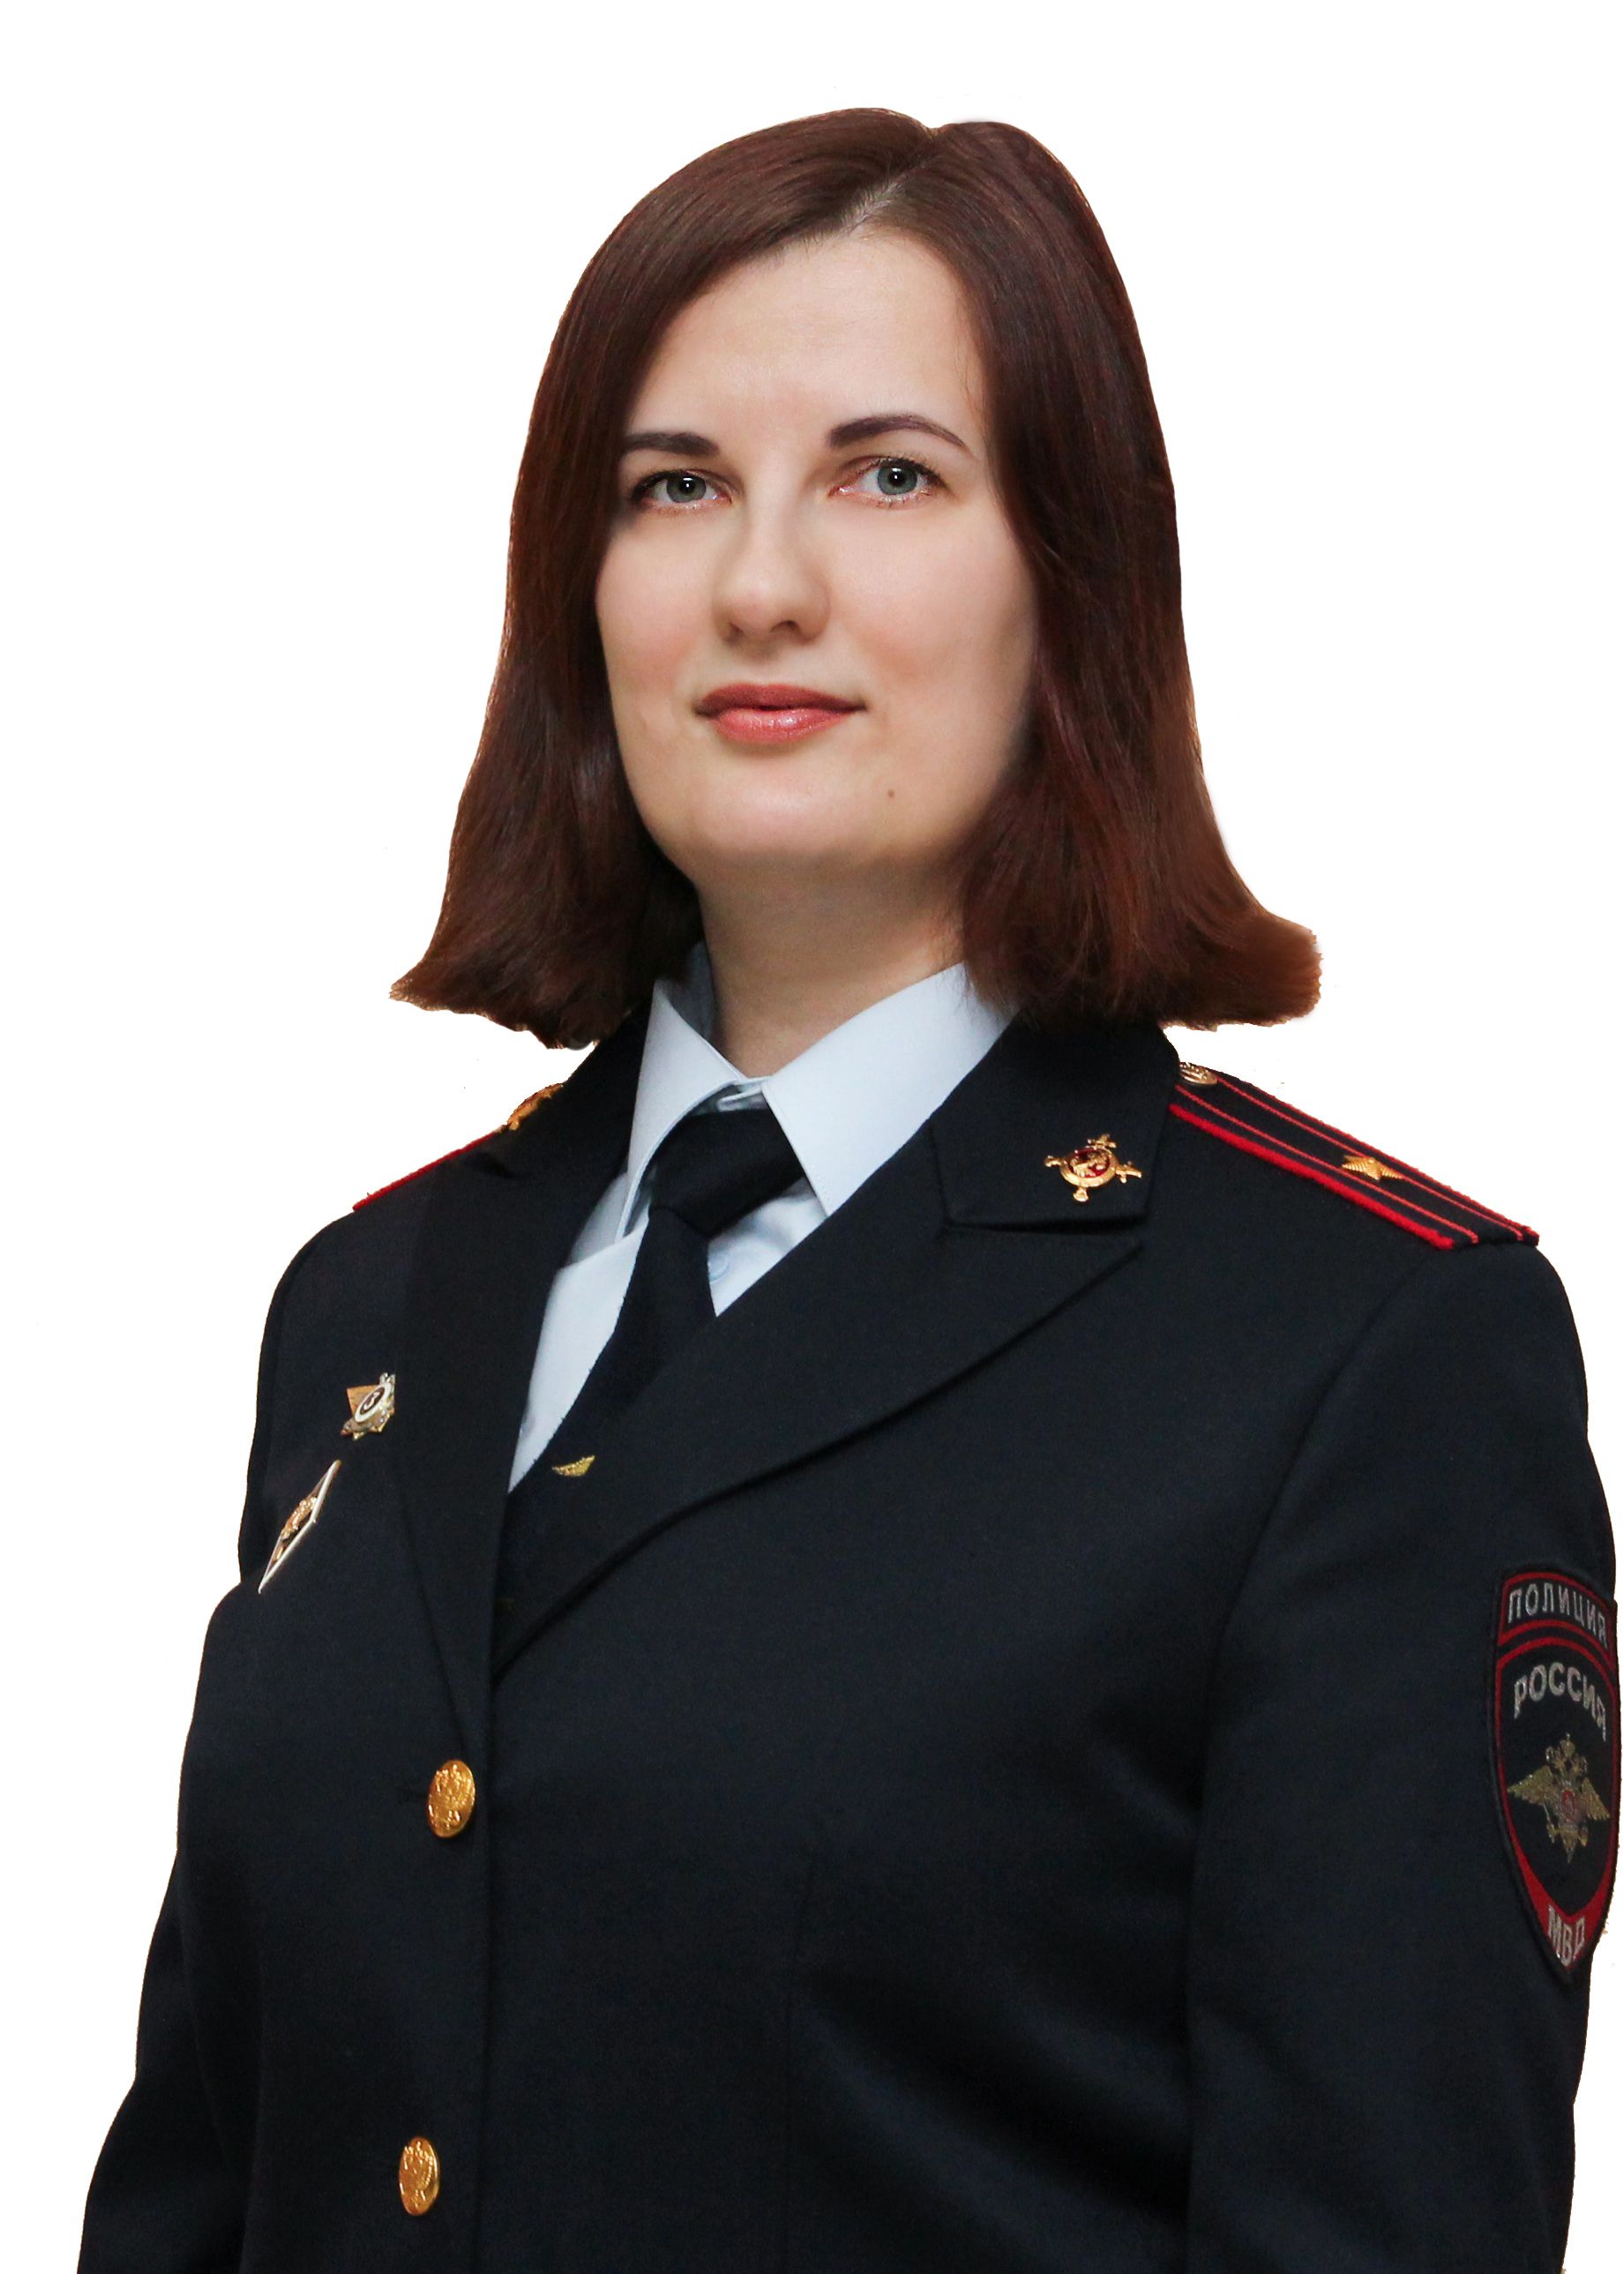             Зотина Елена Владимировна
    